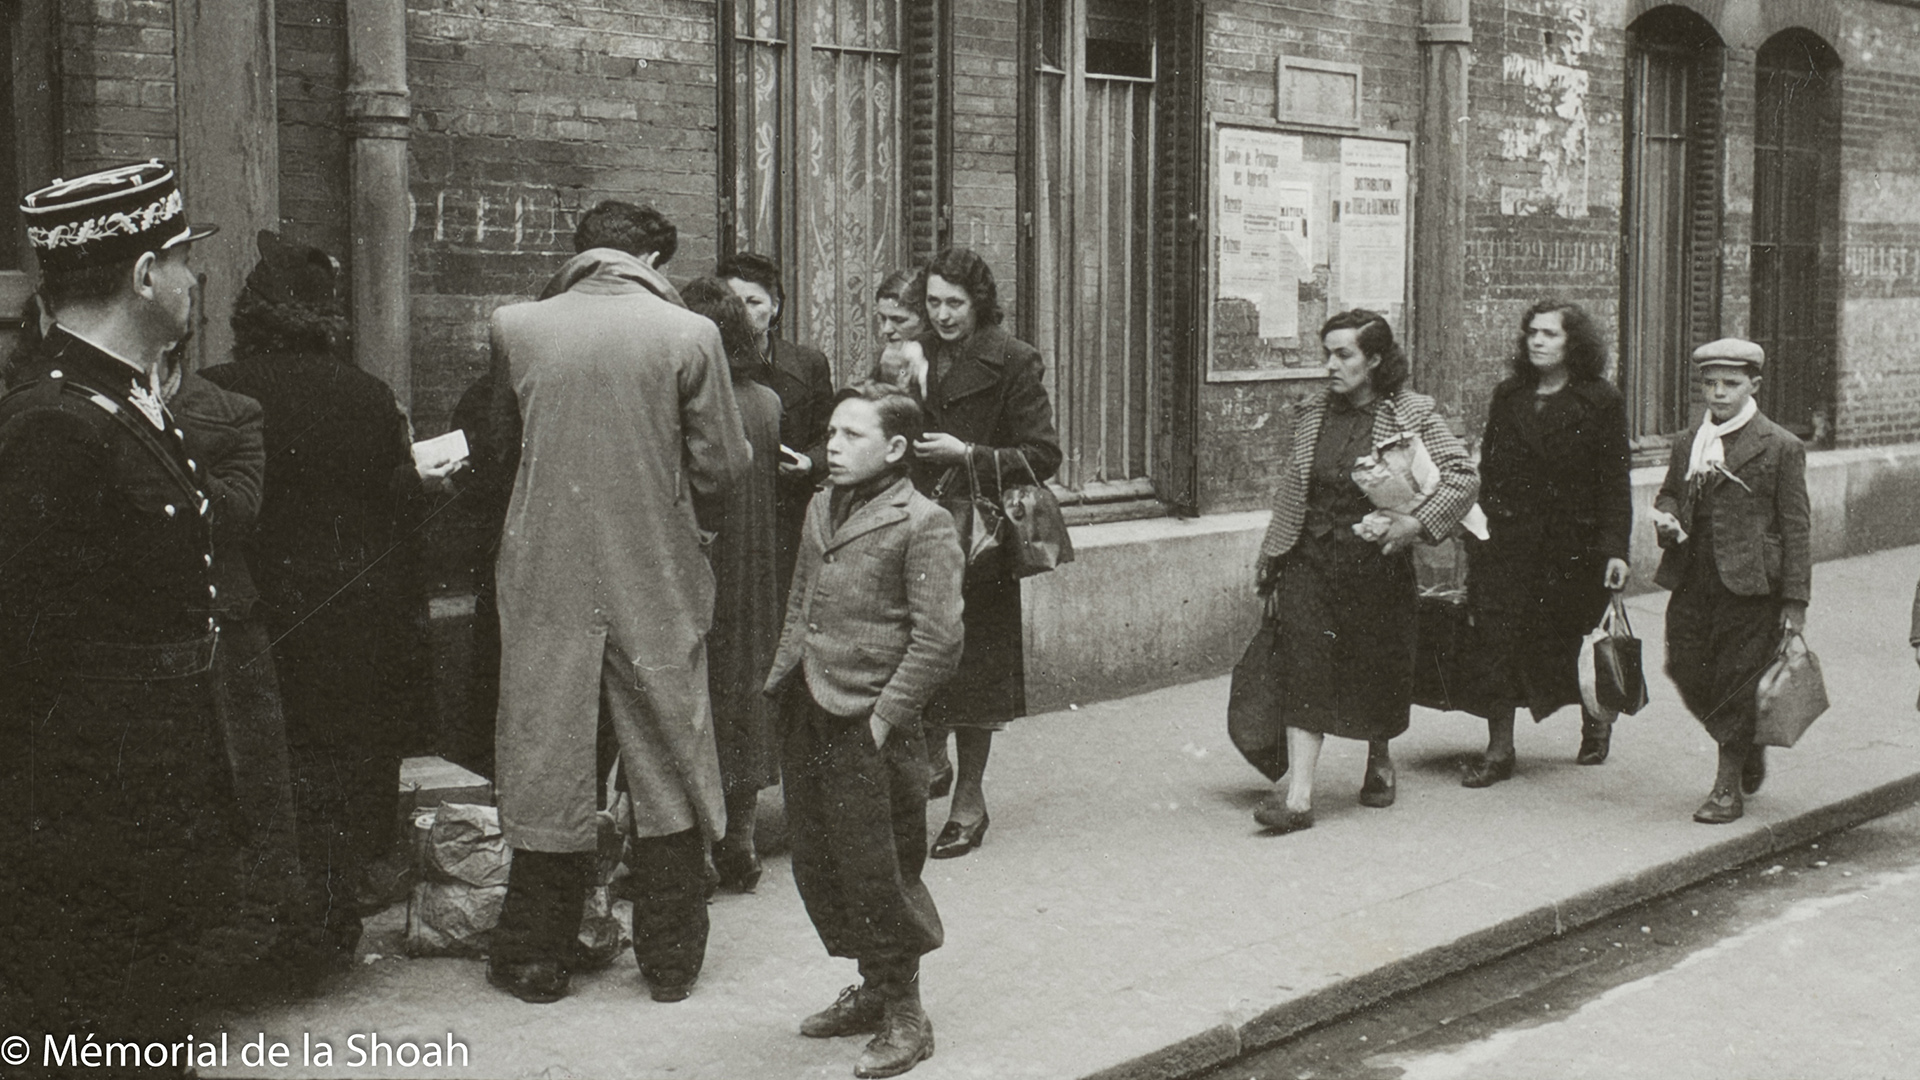 Des images inédites mettent au jour la rafle juive du « billet vert » en 1941